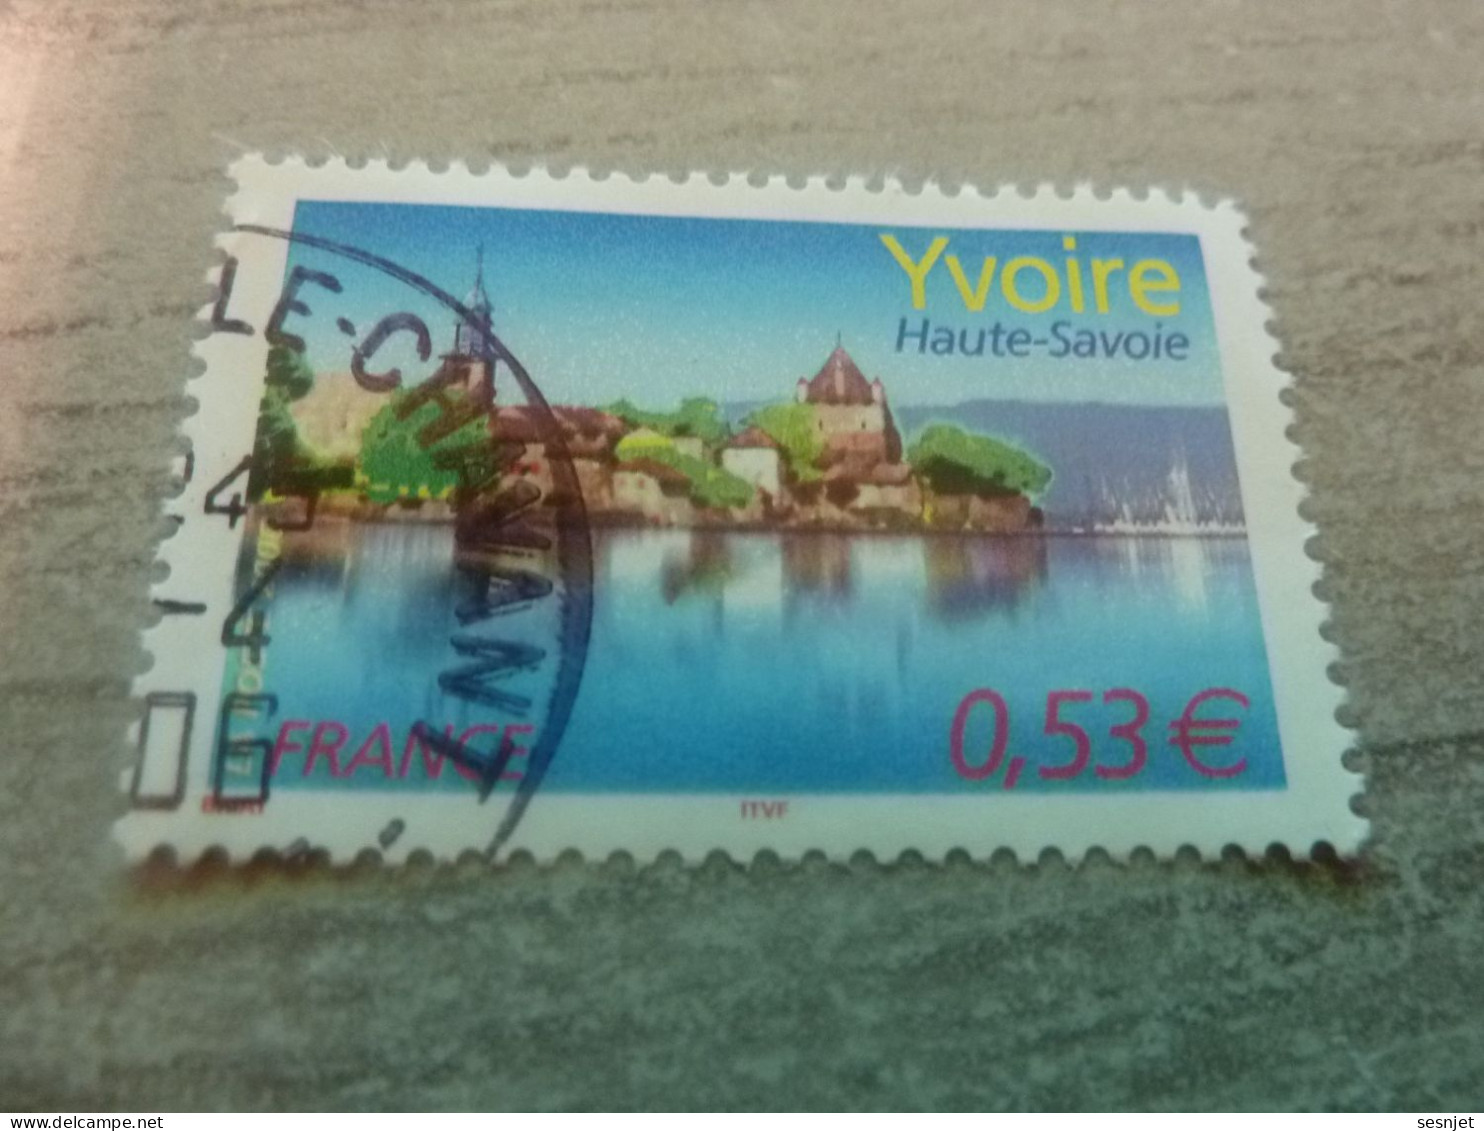 Yvoire - Lac Léman (Haute-Savoie) - 0.53€ - Yt 3892 - Multicolore - Oblitéré - Année 2006 - - Usati